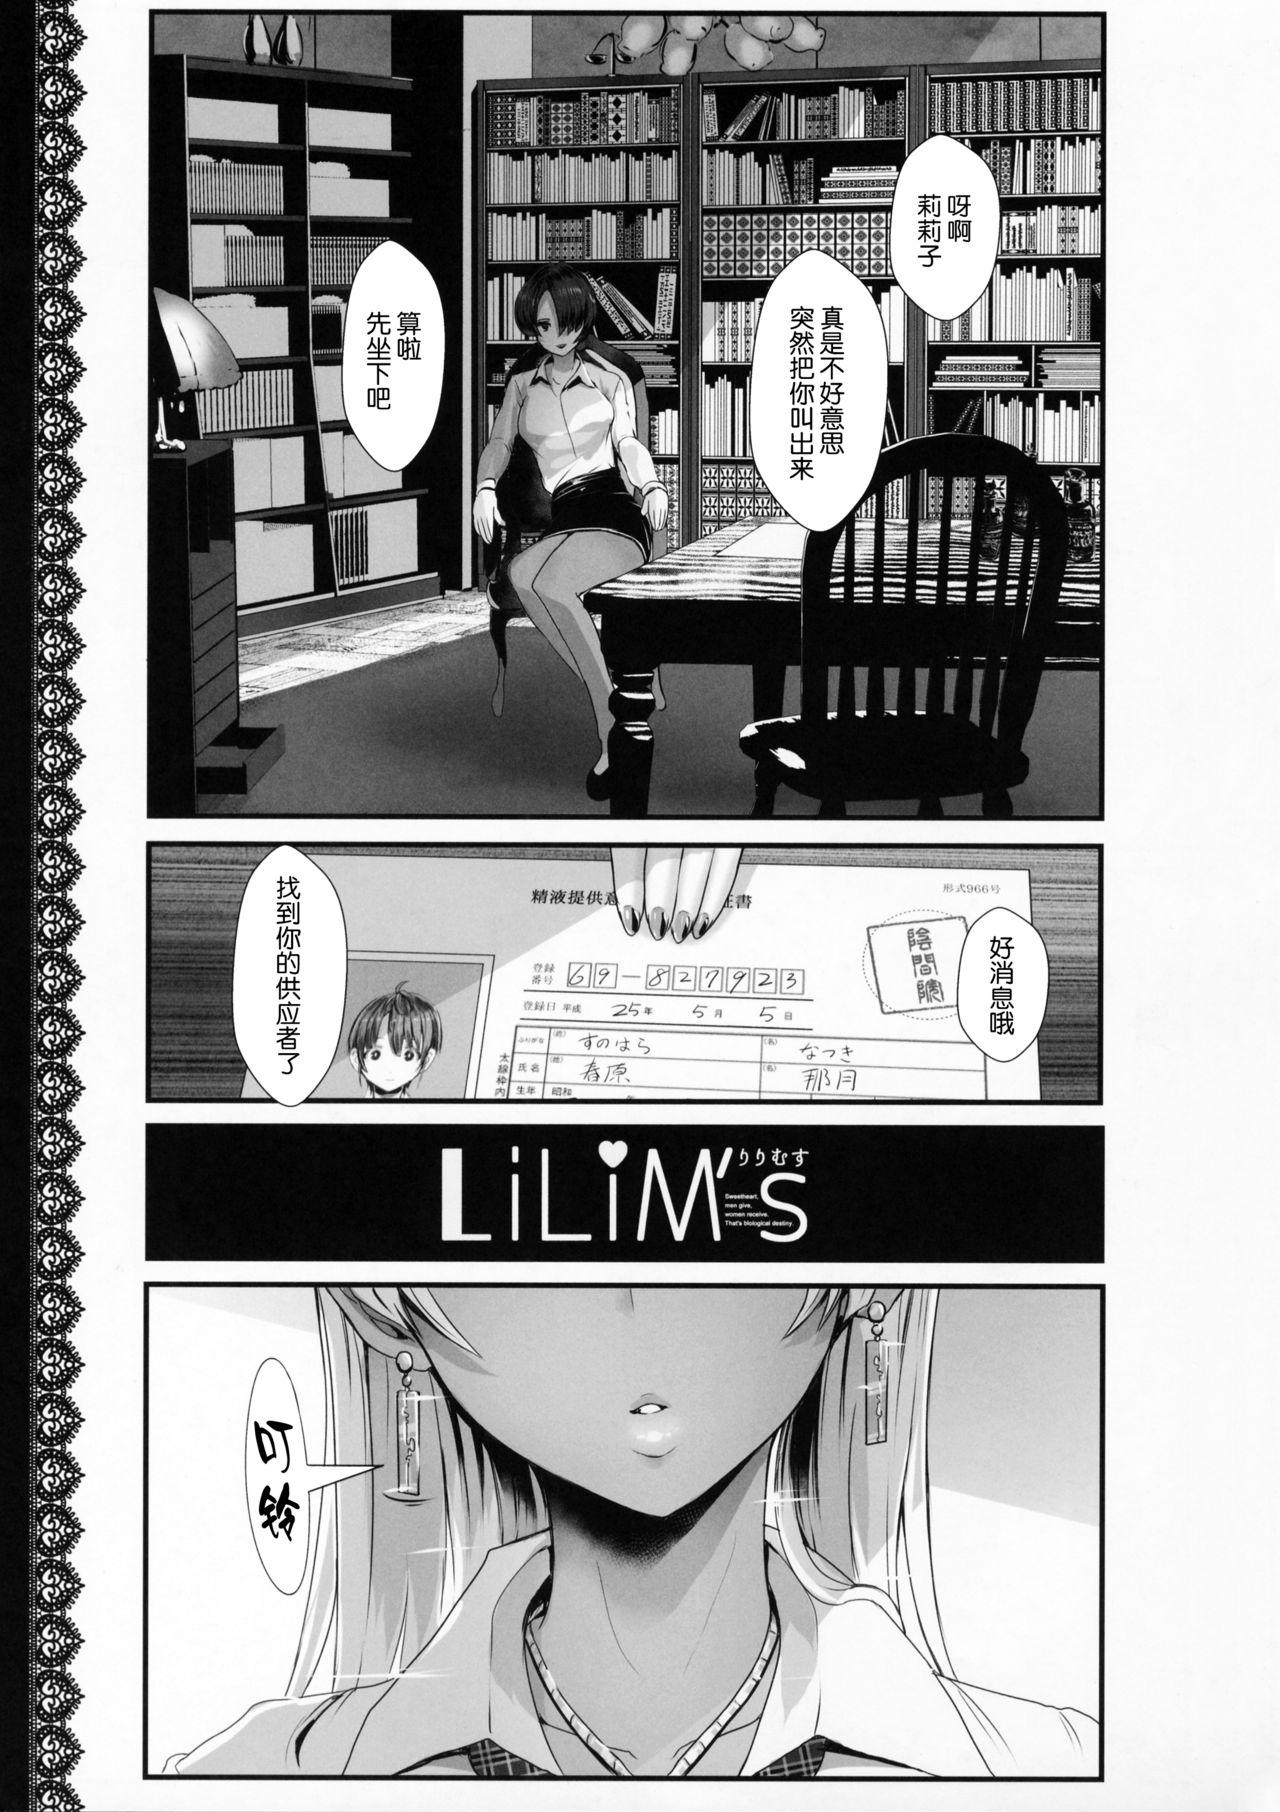 LiLiM's 1